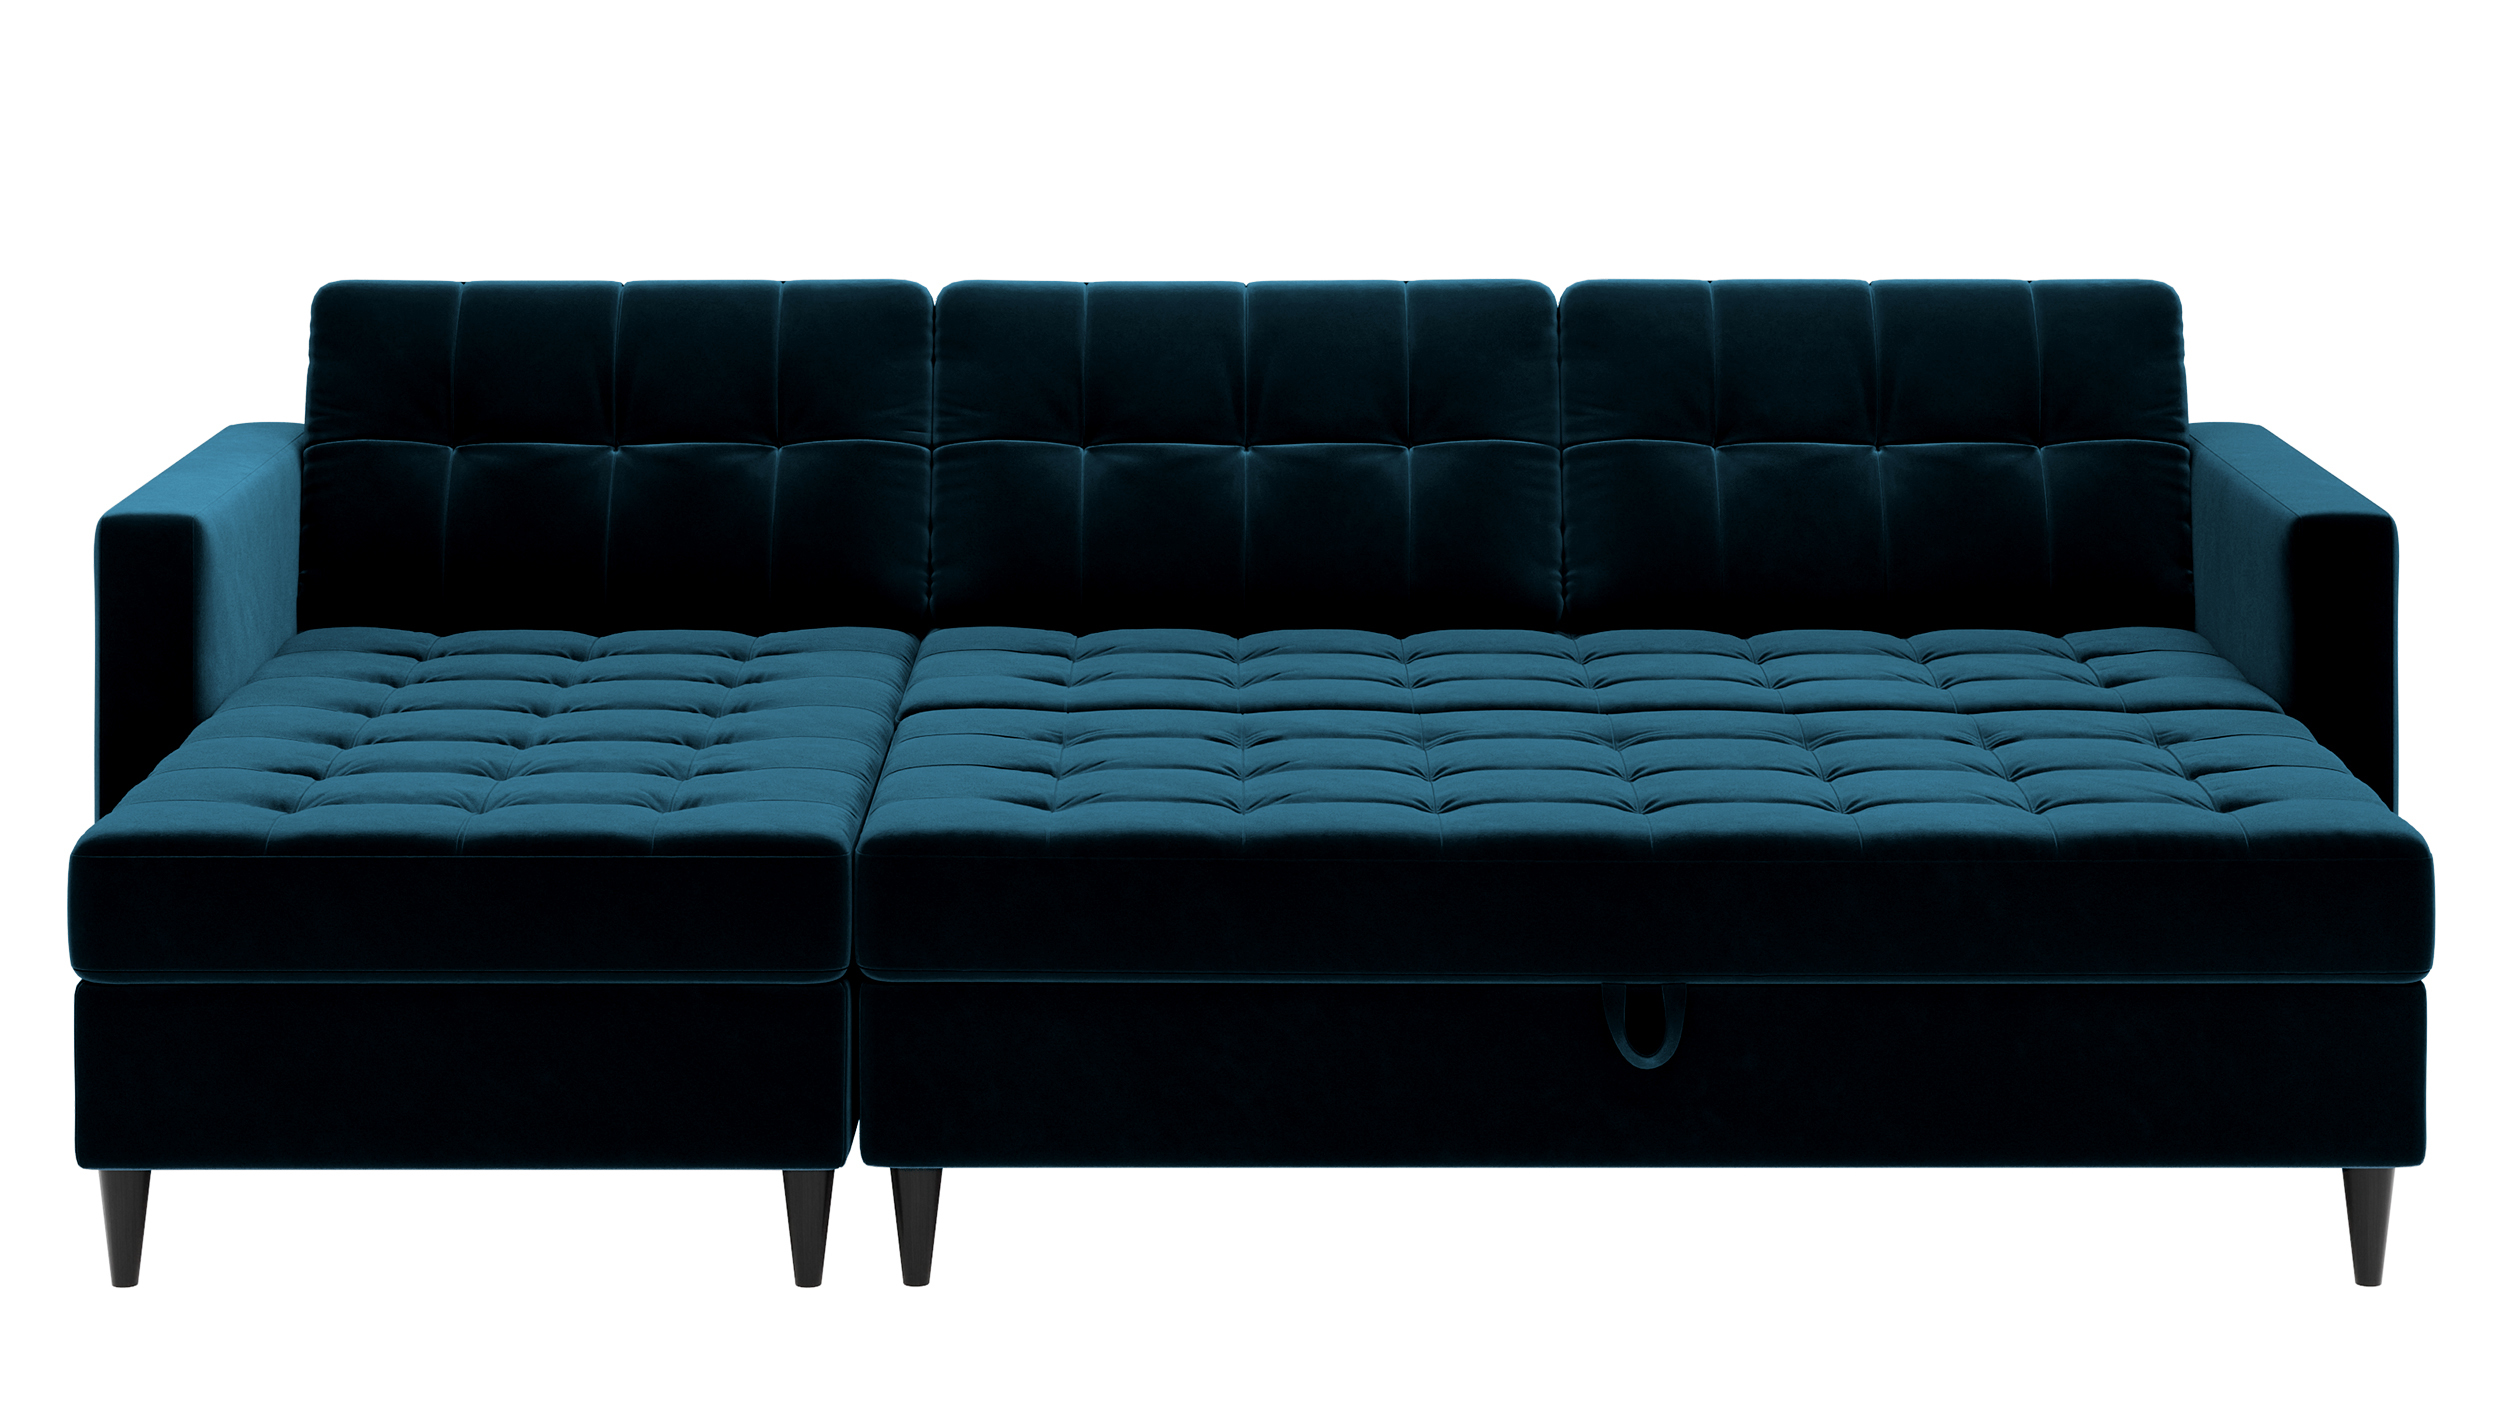 KOPENHAGA Canapé d’angle bleu marine avec pouf pieds en bois noirs